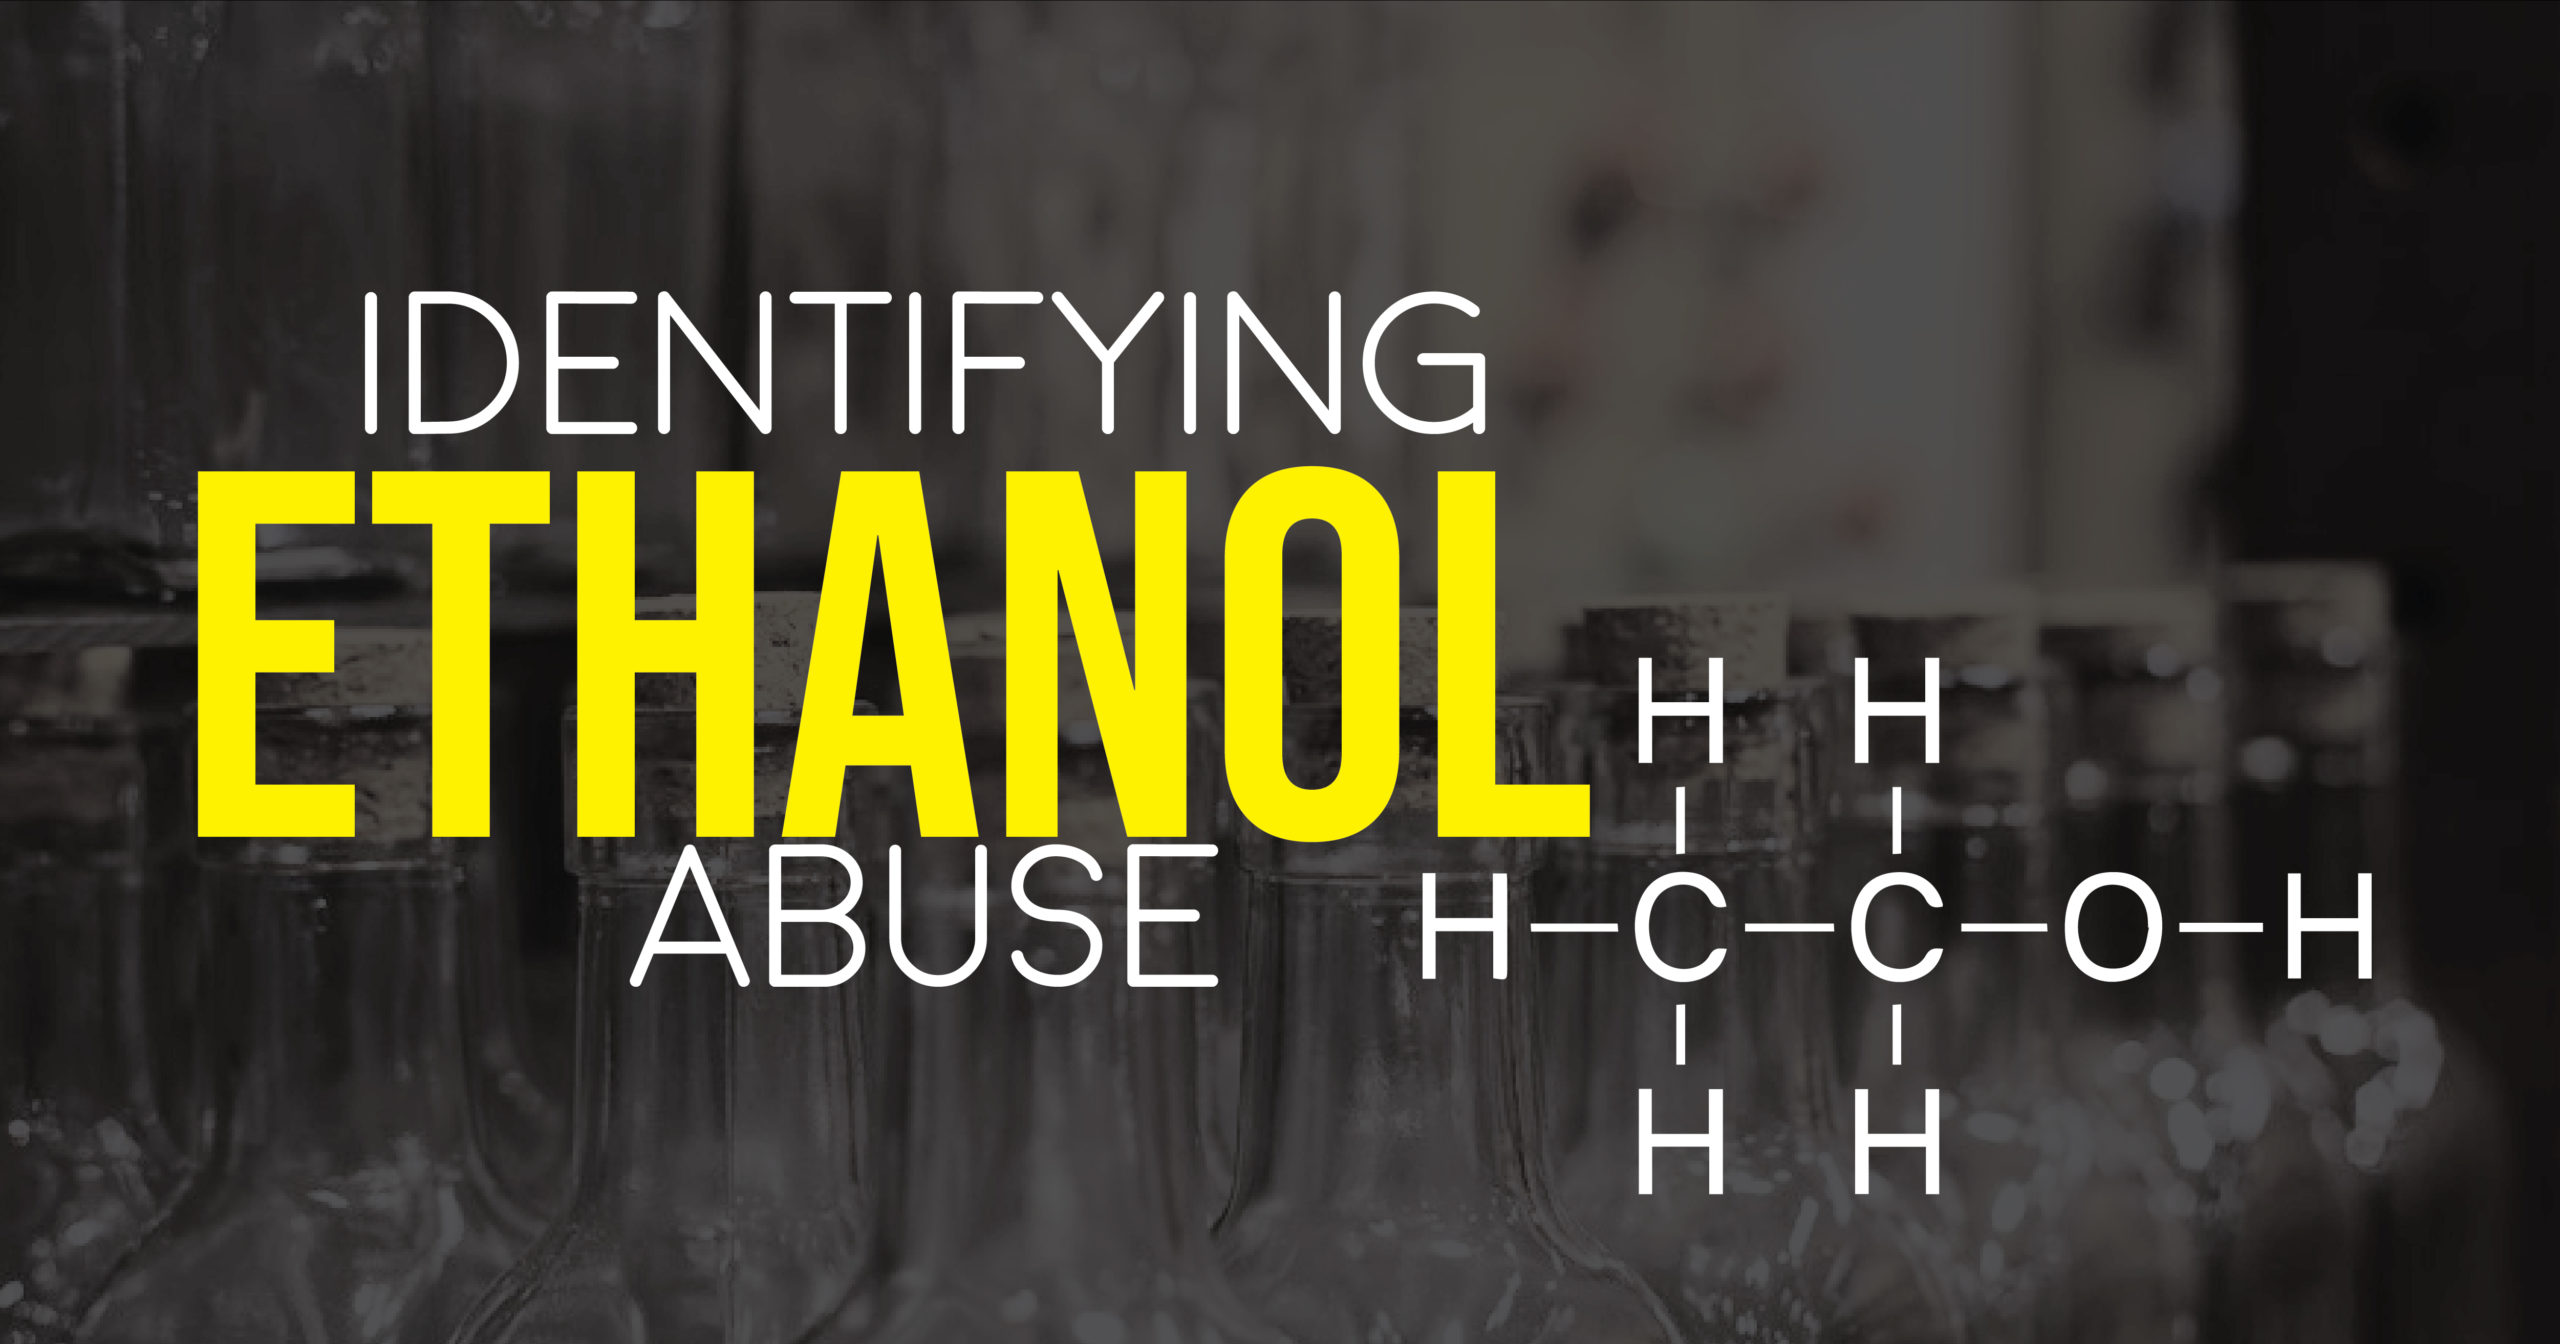 Identifying Ethanol Abuse